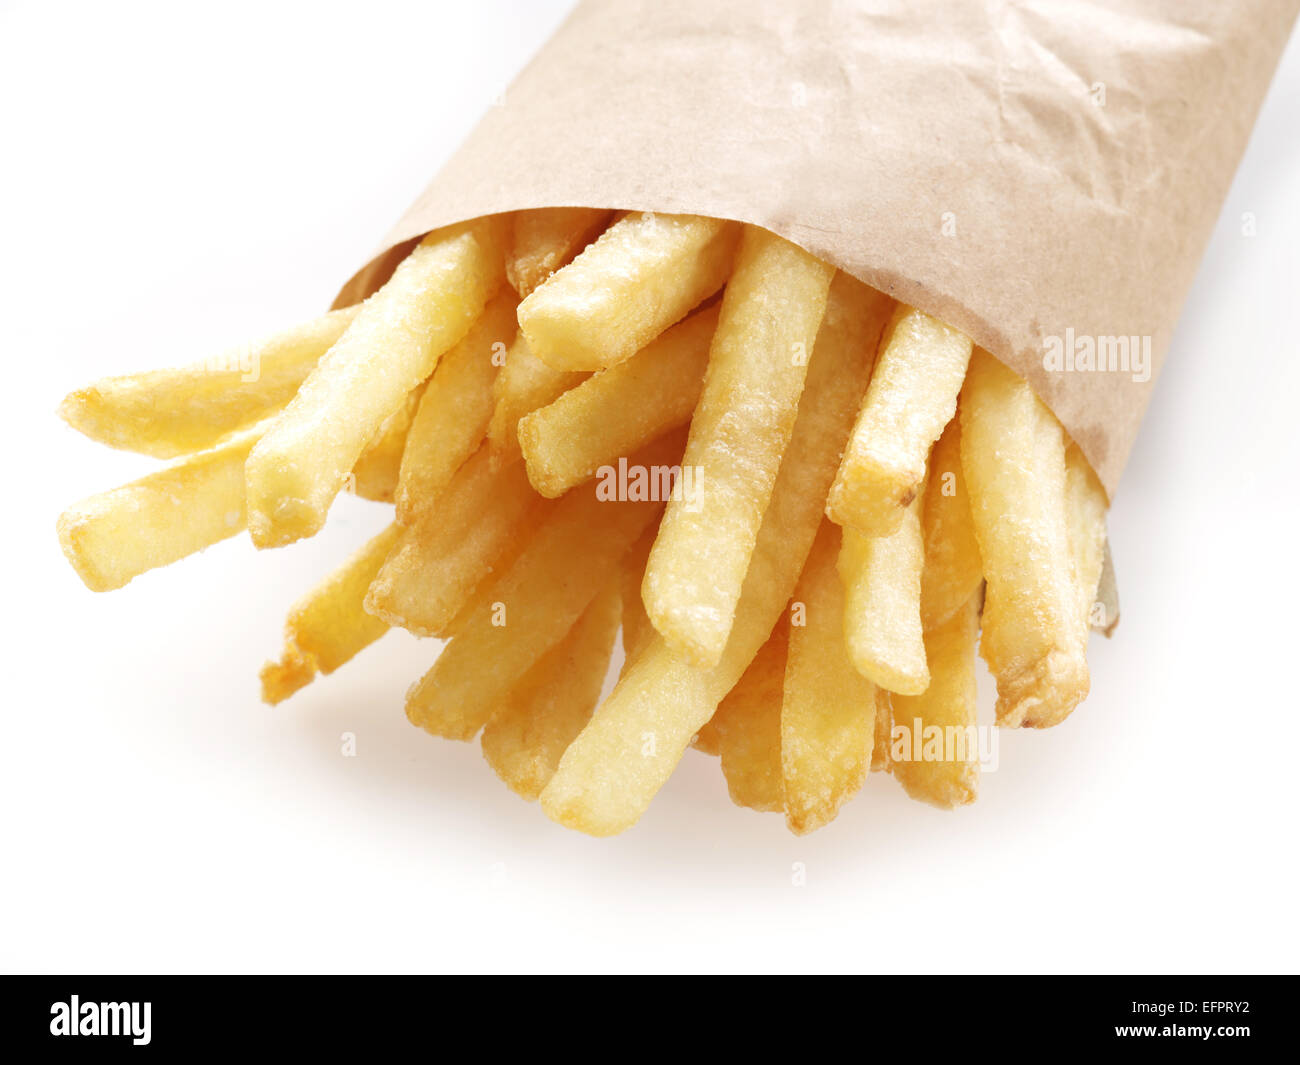 Potato - French fries on a white background. Stock Photo